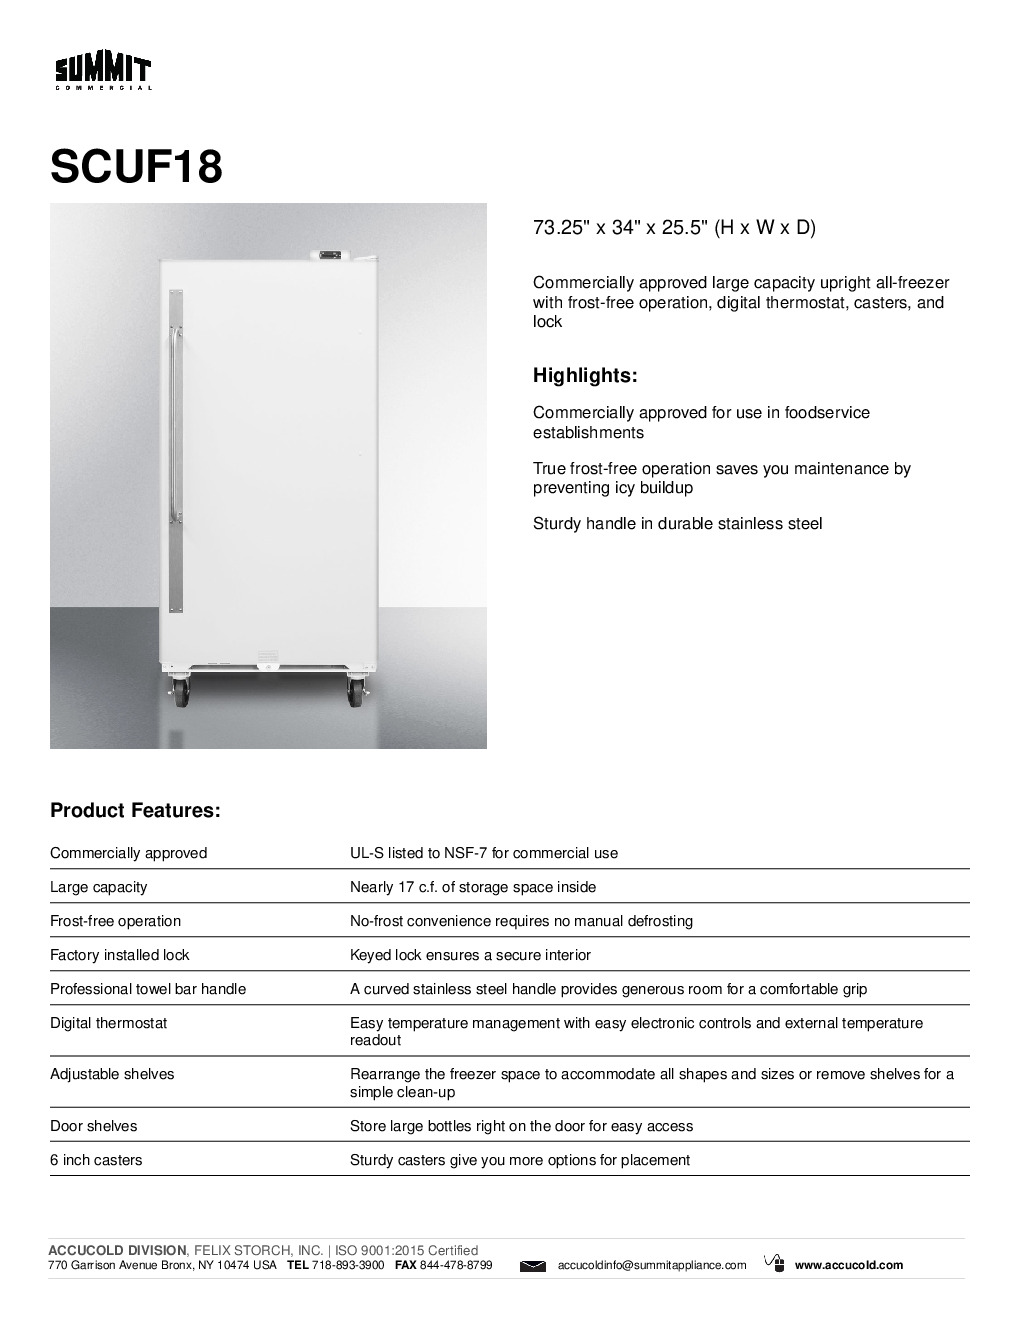 Summit SCUF18 Reach-In Freezer